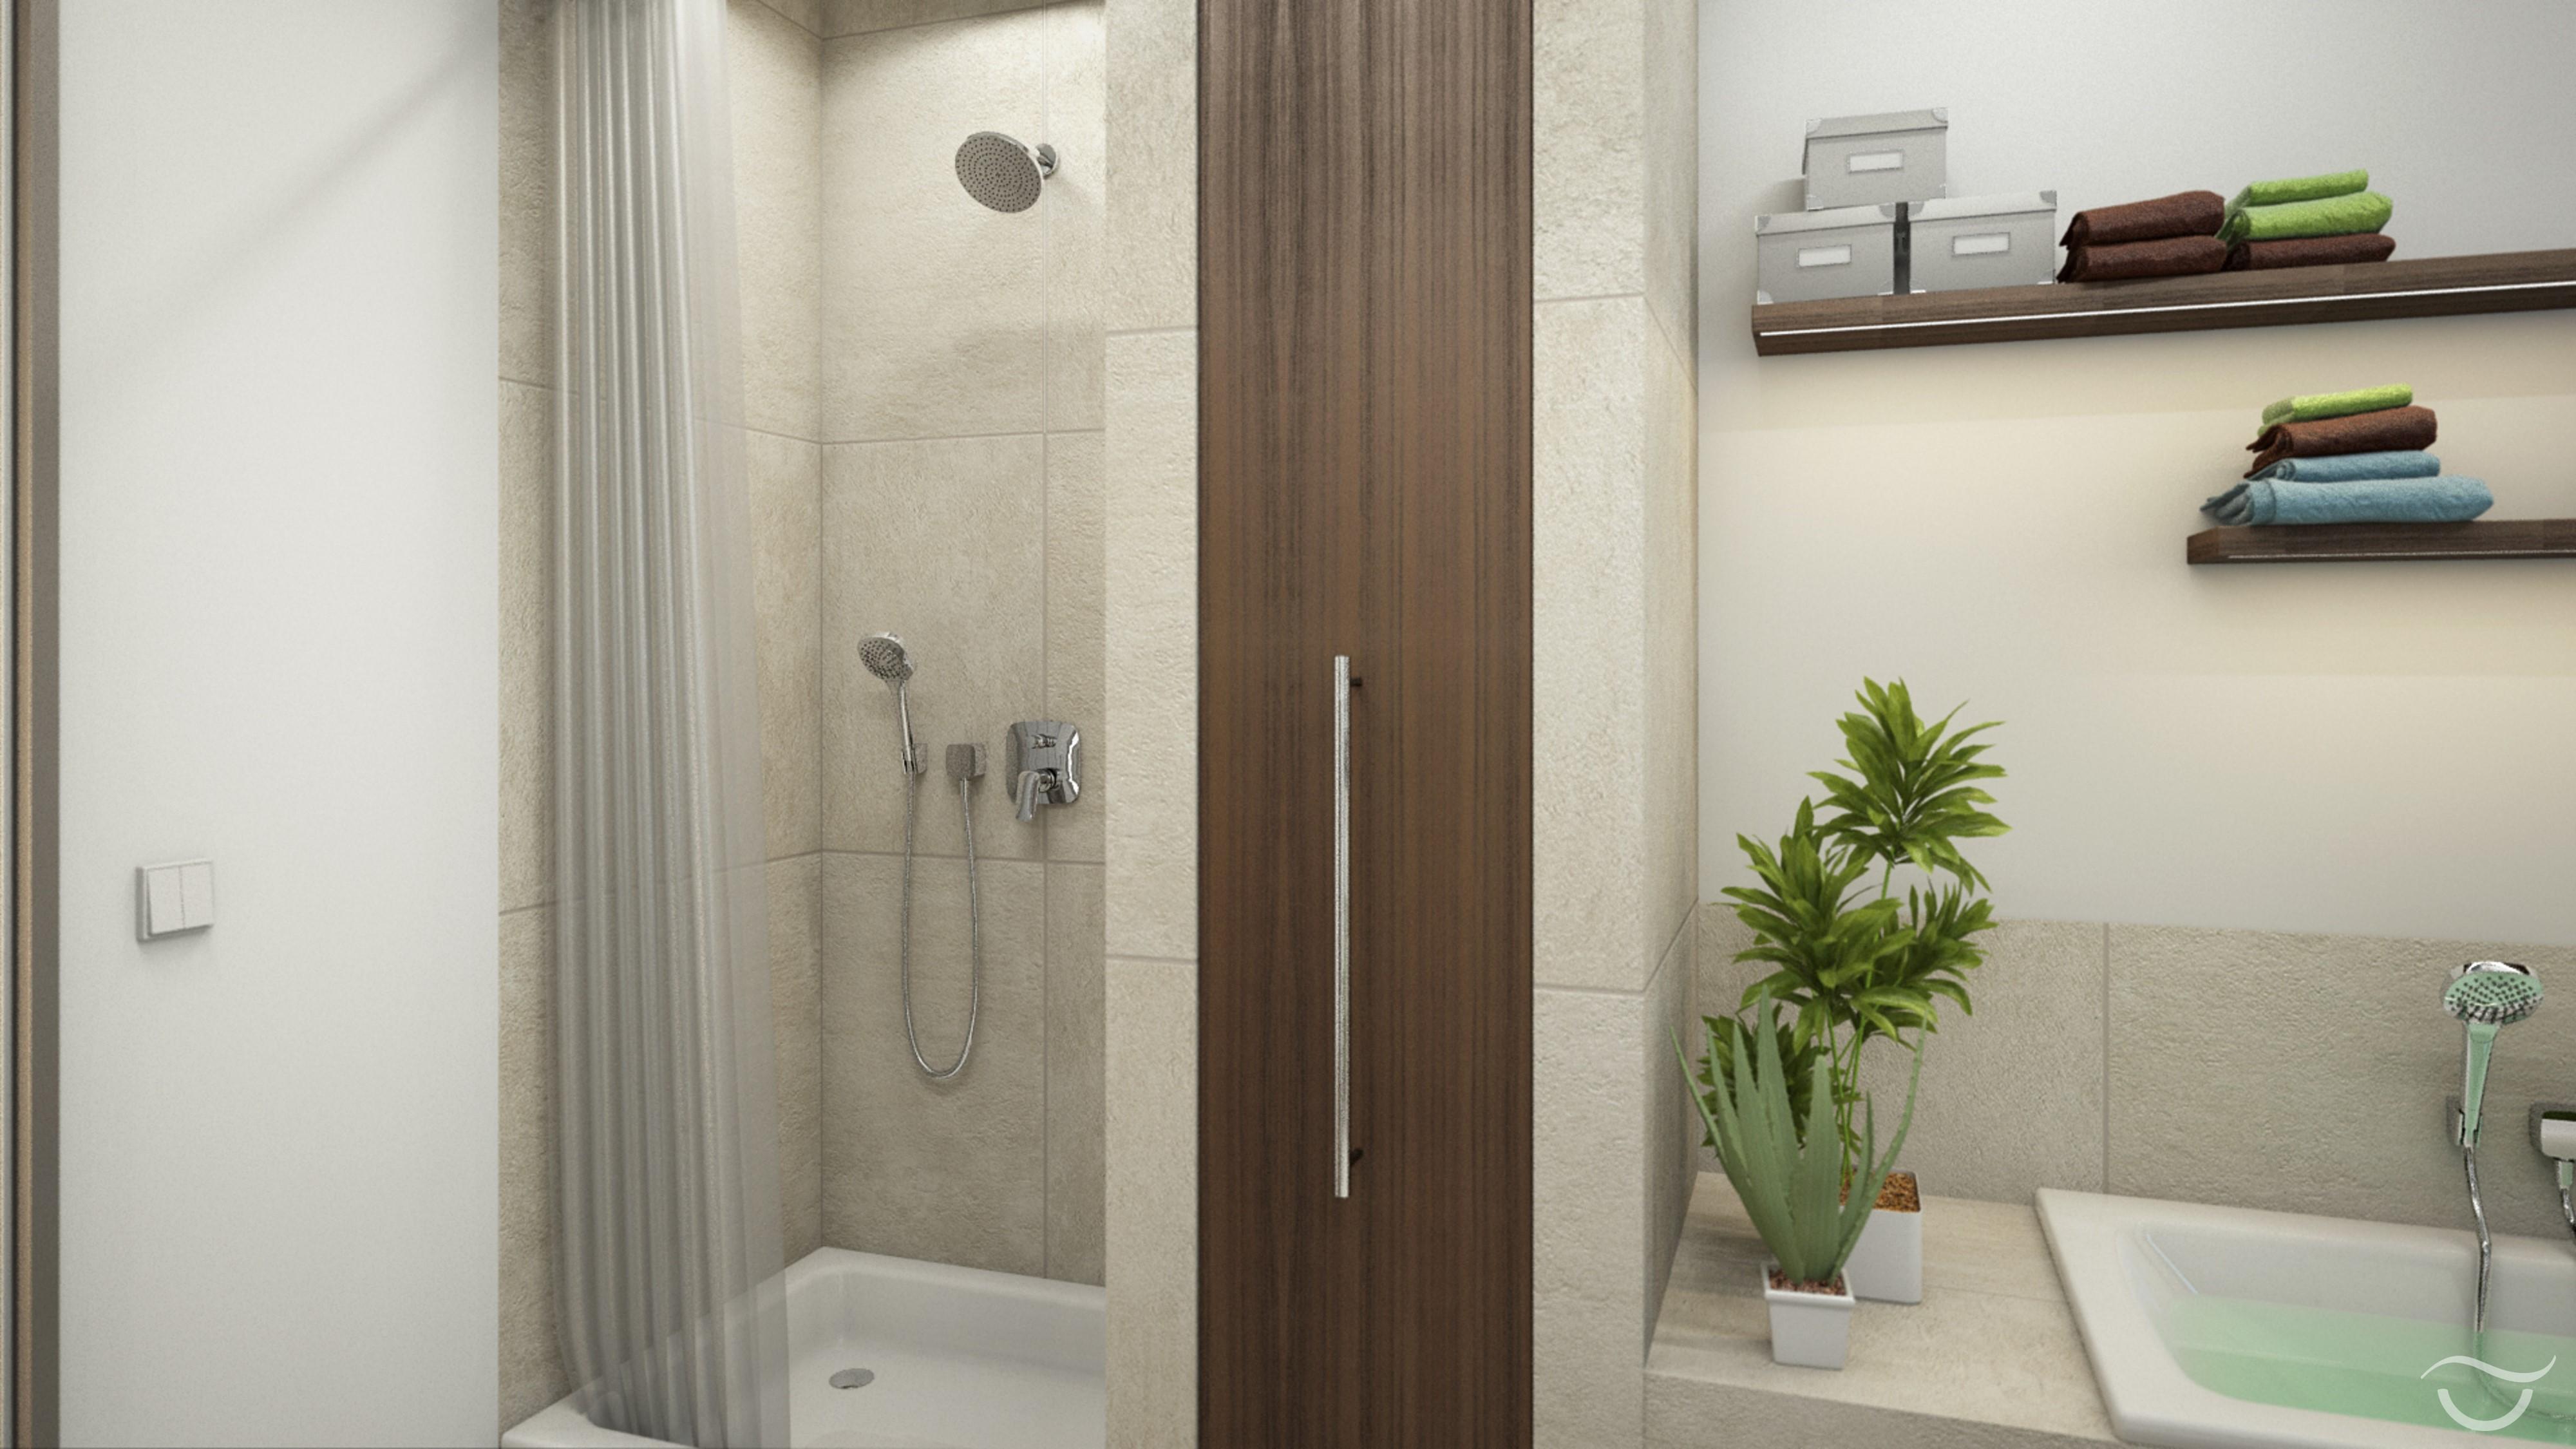 Einbauschrank im Badezimmer ist richtig praktisch #naturstein #einbauschrank #einbaudusche ©Banovo GmbH